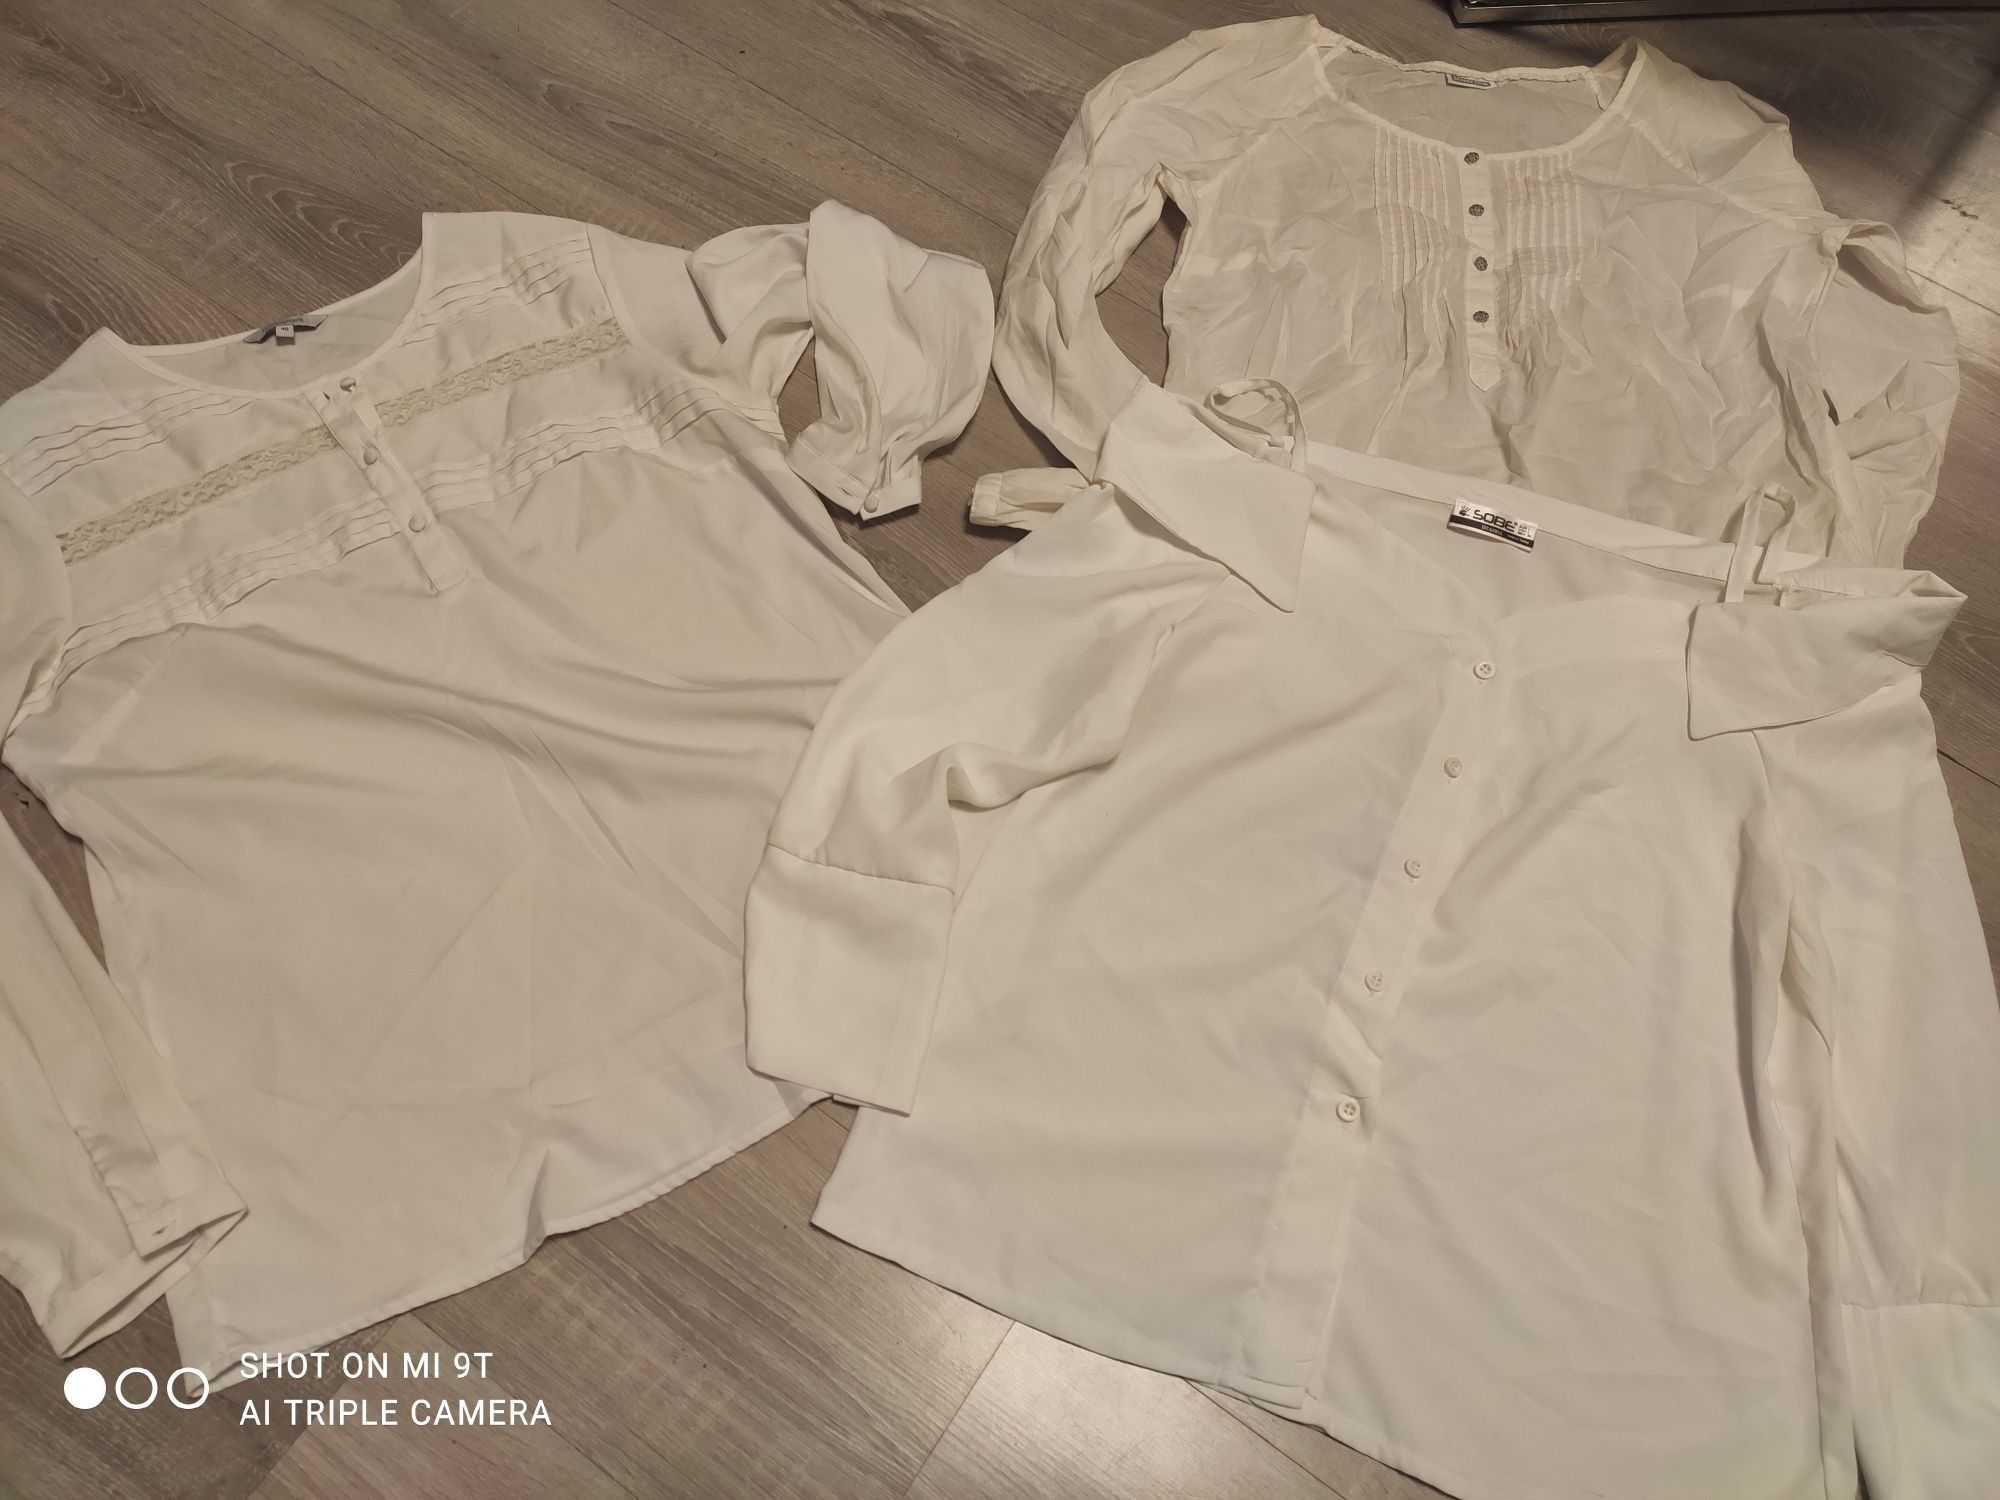 Zestaw ubrań ubrania wizytowe 2 pary spodni  5 par koszul białych  roz